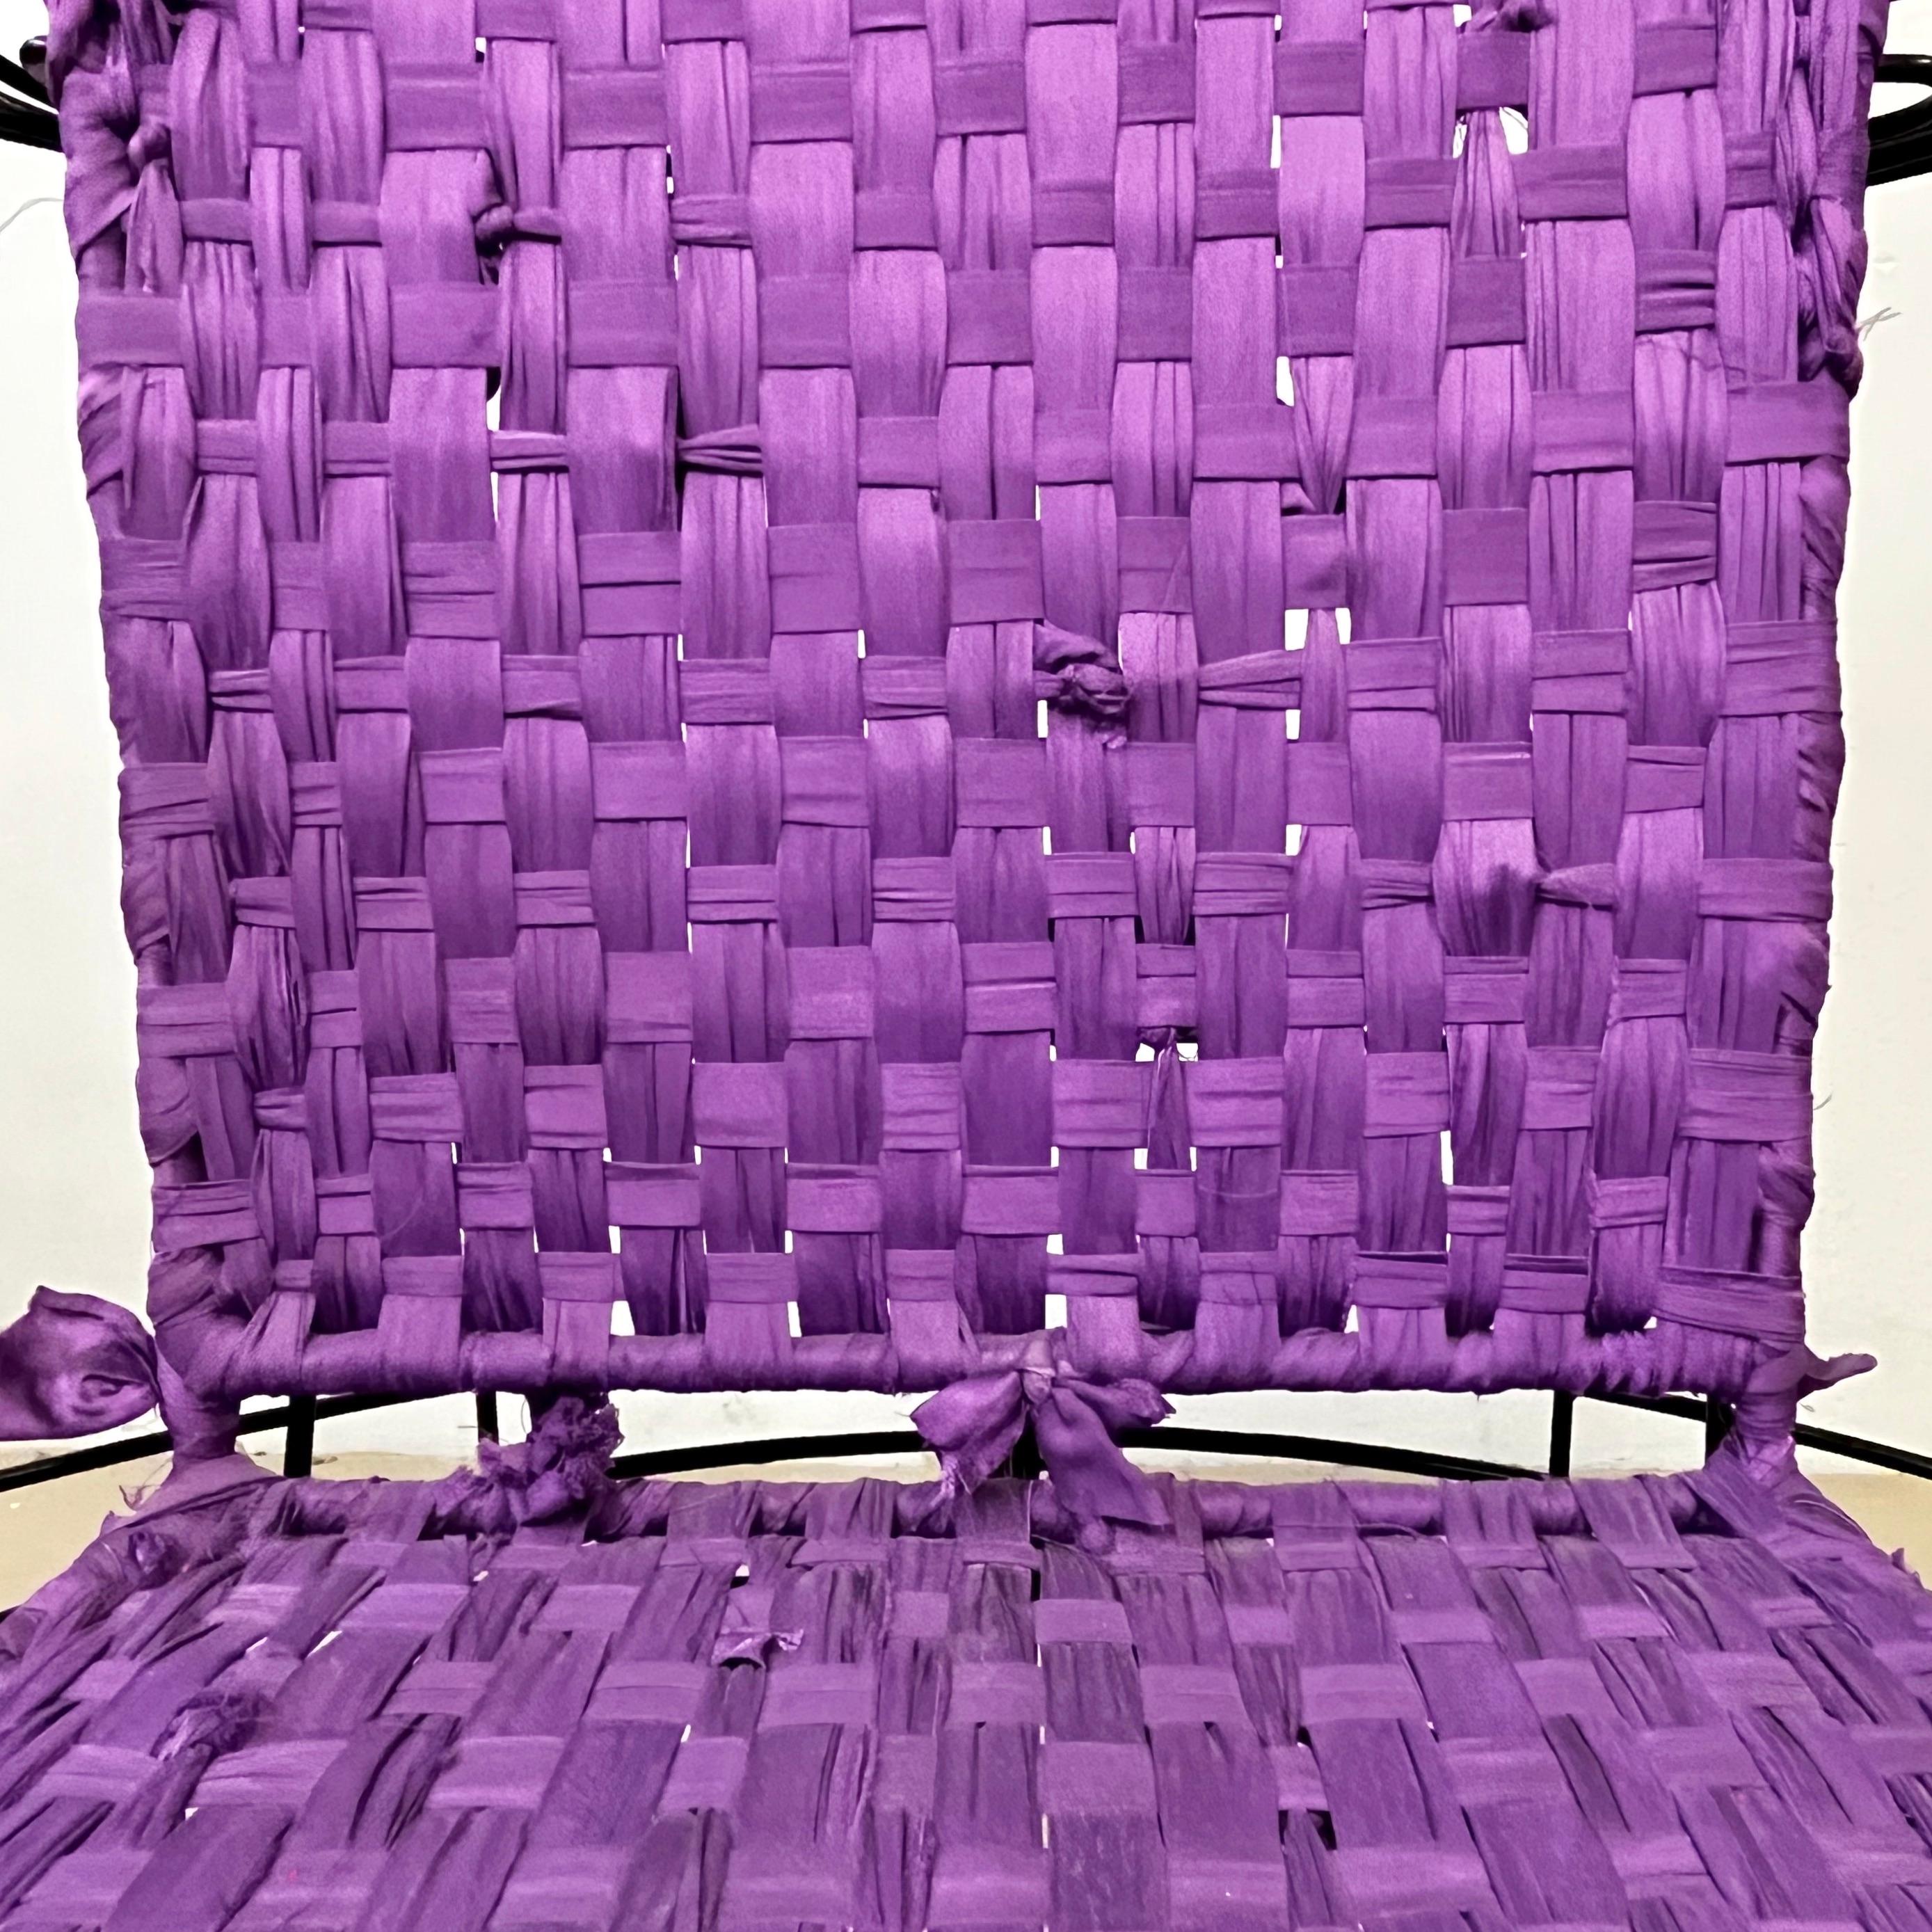 Fauteuil minimaliste amusant, un design moderne organique unique, fabriqué et signé par l'artiste italien, Anacleto Spazzapan (Luino, Italie - 1943). Parfait pour une chaise de jardin ou une sculpture décorative d'intérieur. Un siège de collection,